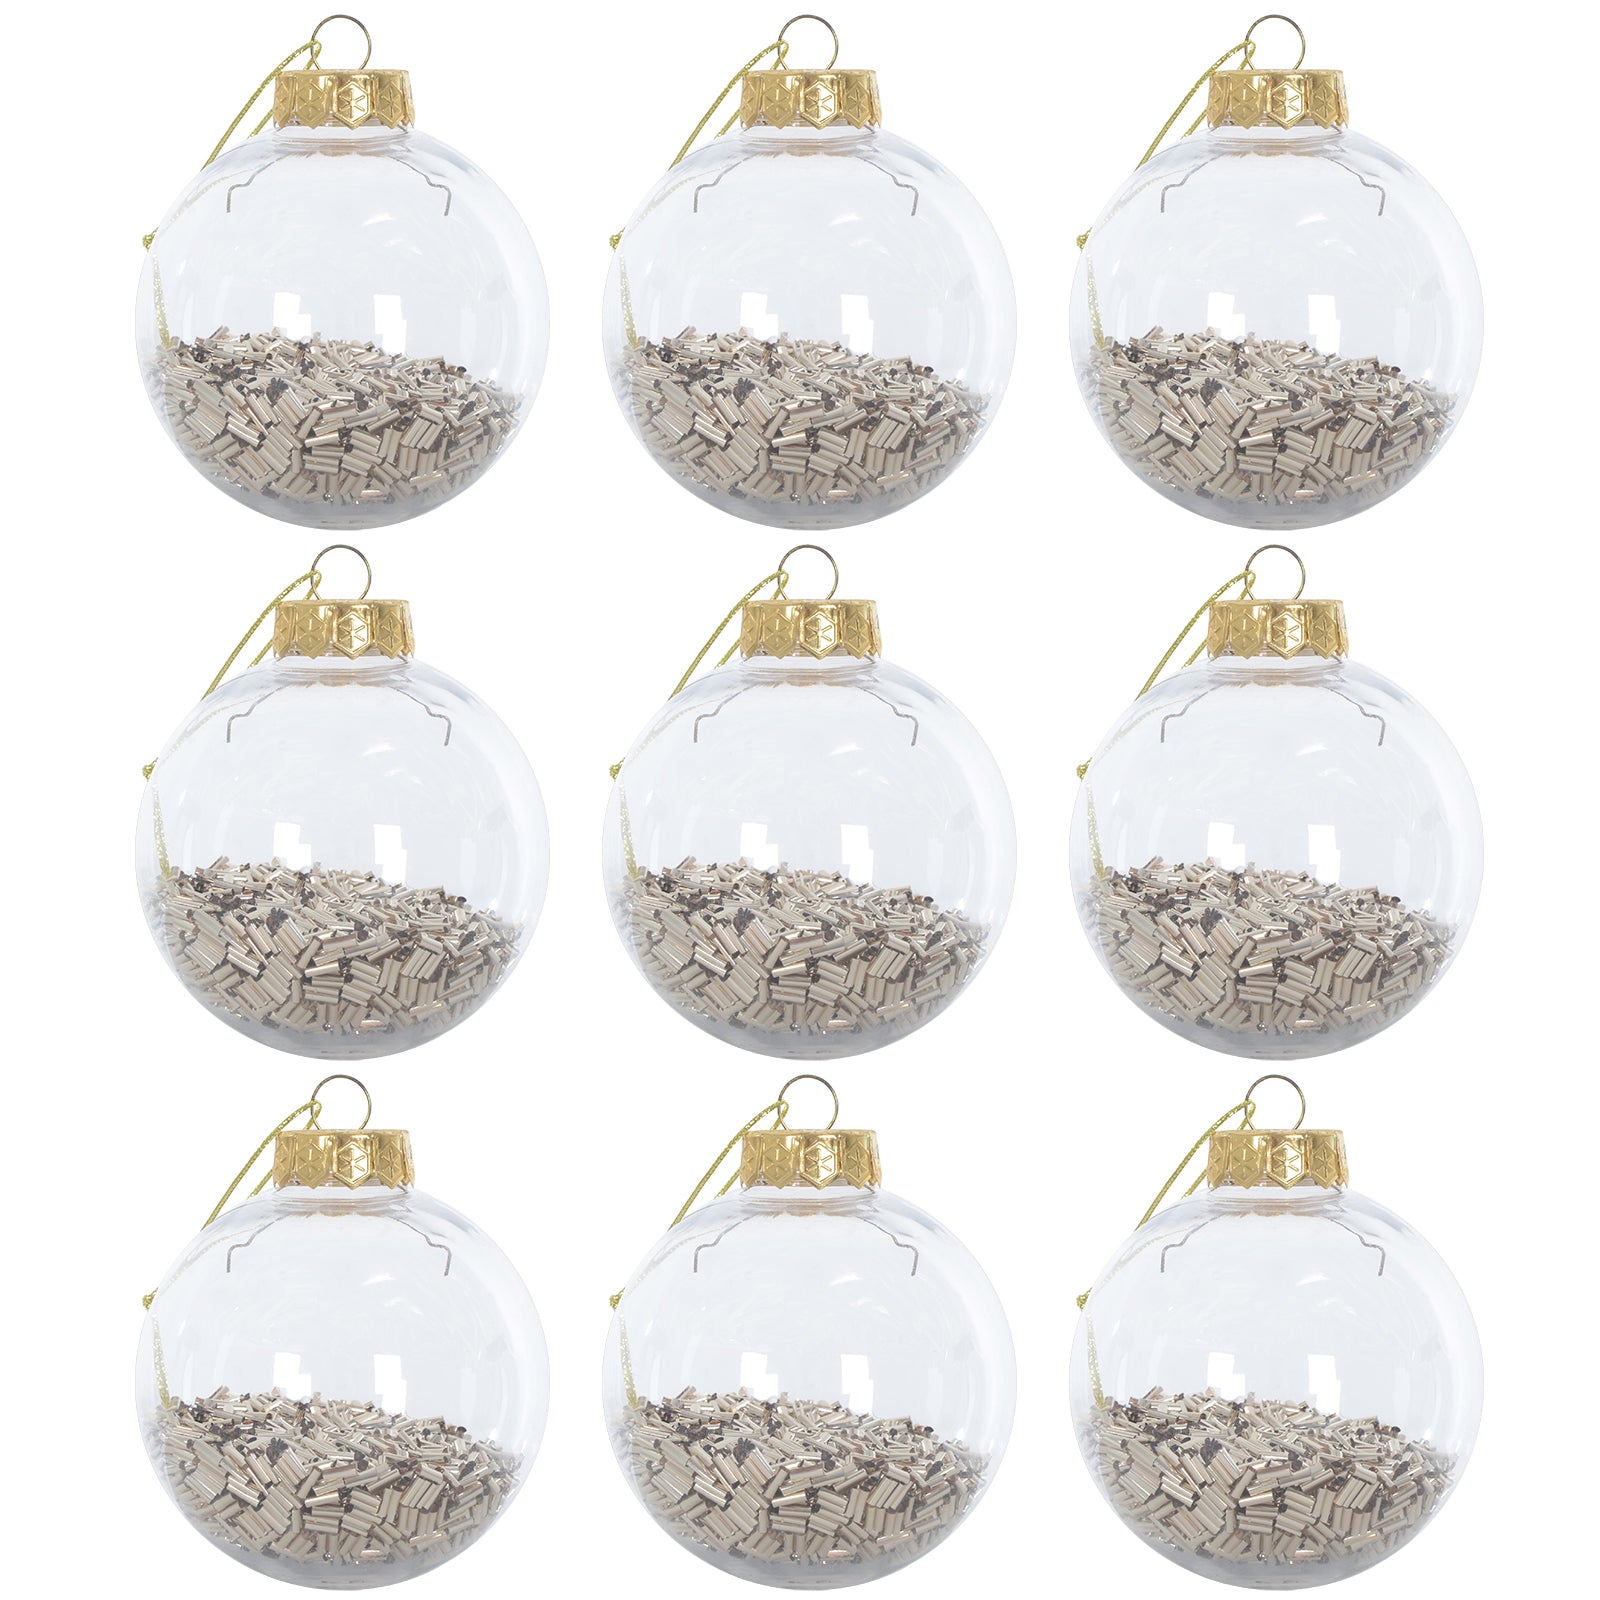 Mr Crimbo 9 x 8cm Foil Filled Shaker Christmas Tree Baubles - MrCrimbo.co.uk -XS6470 - Champagne -Baubles